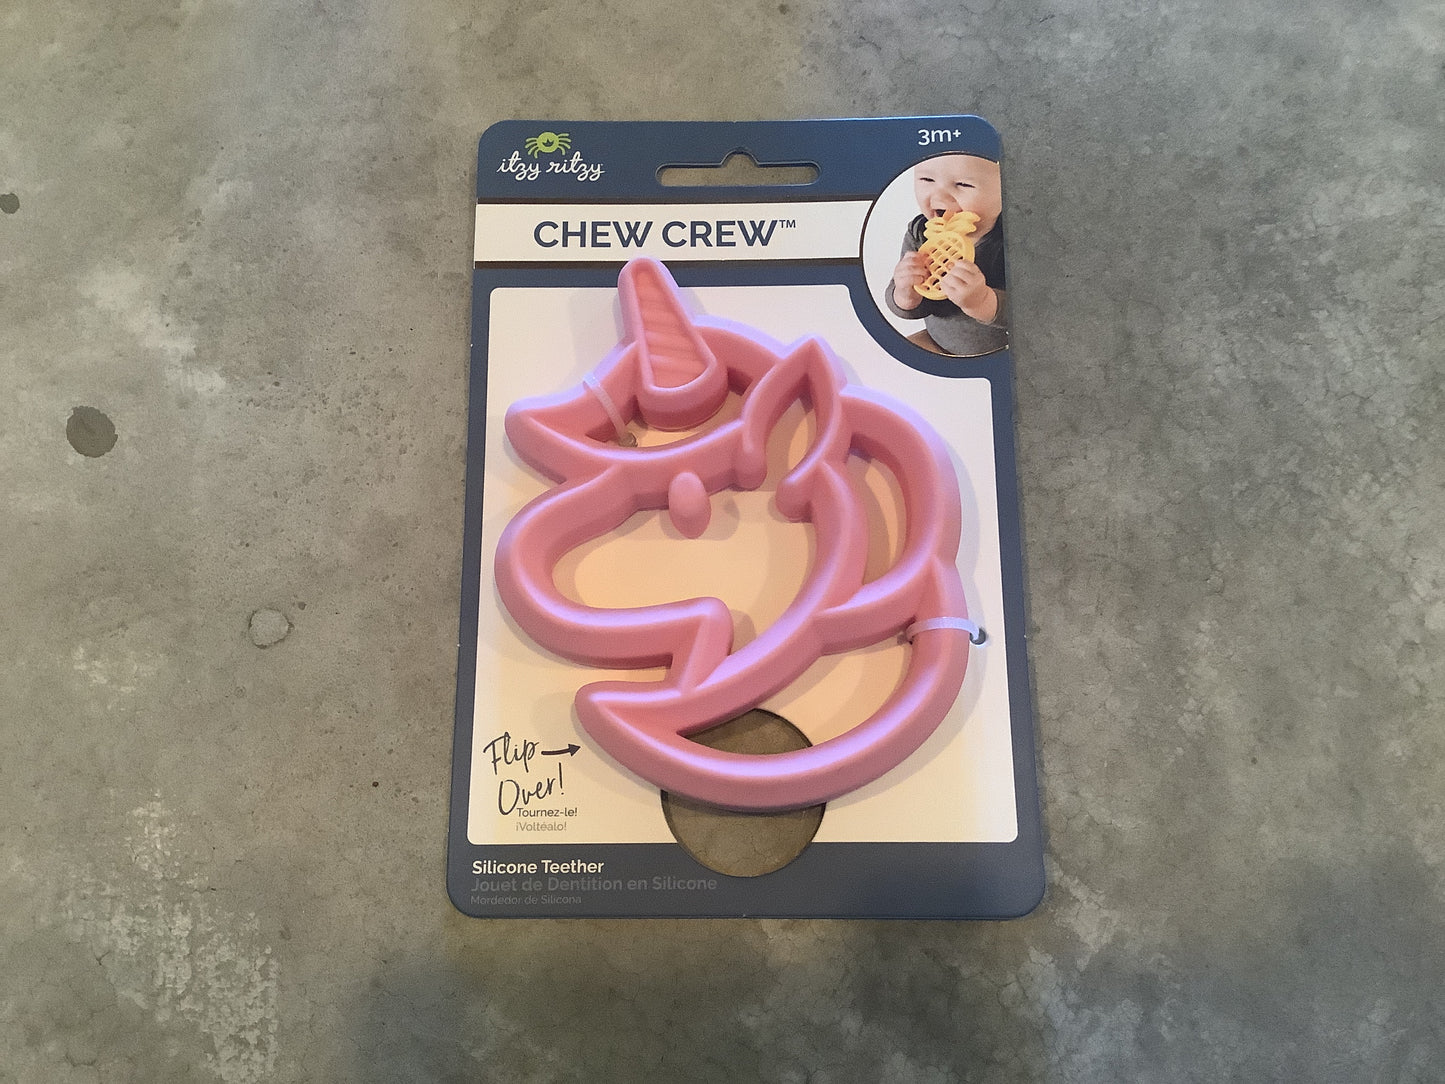 Chew crew unicorn